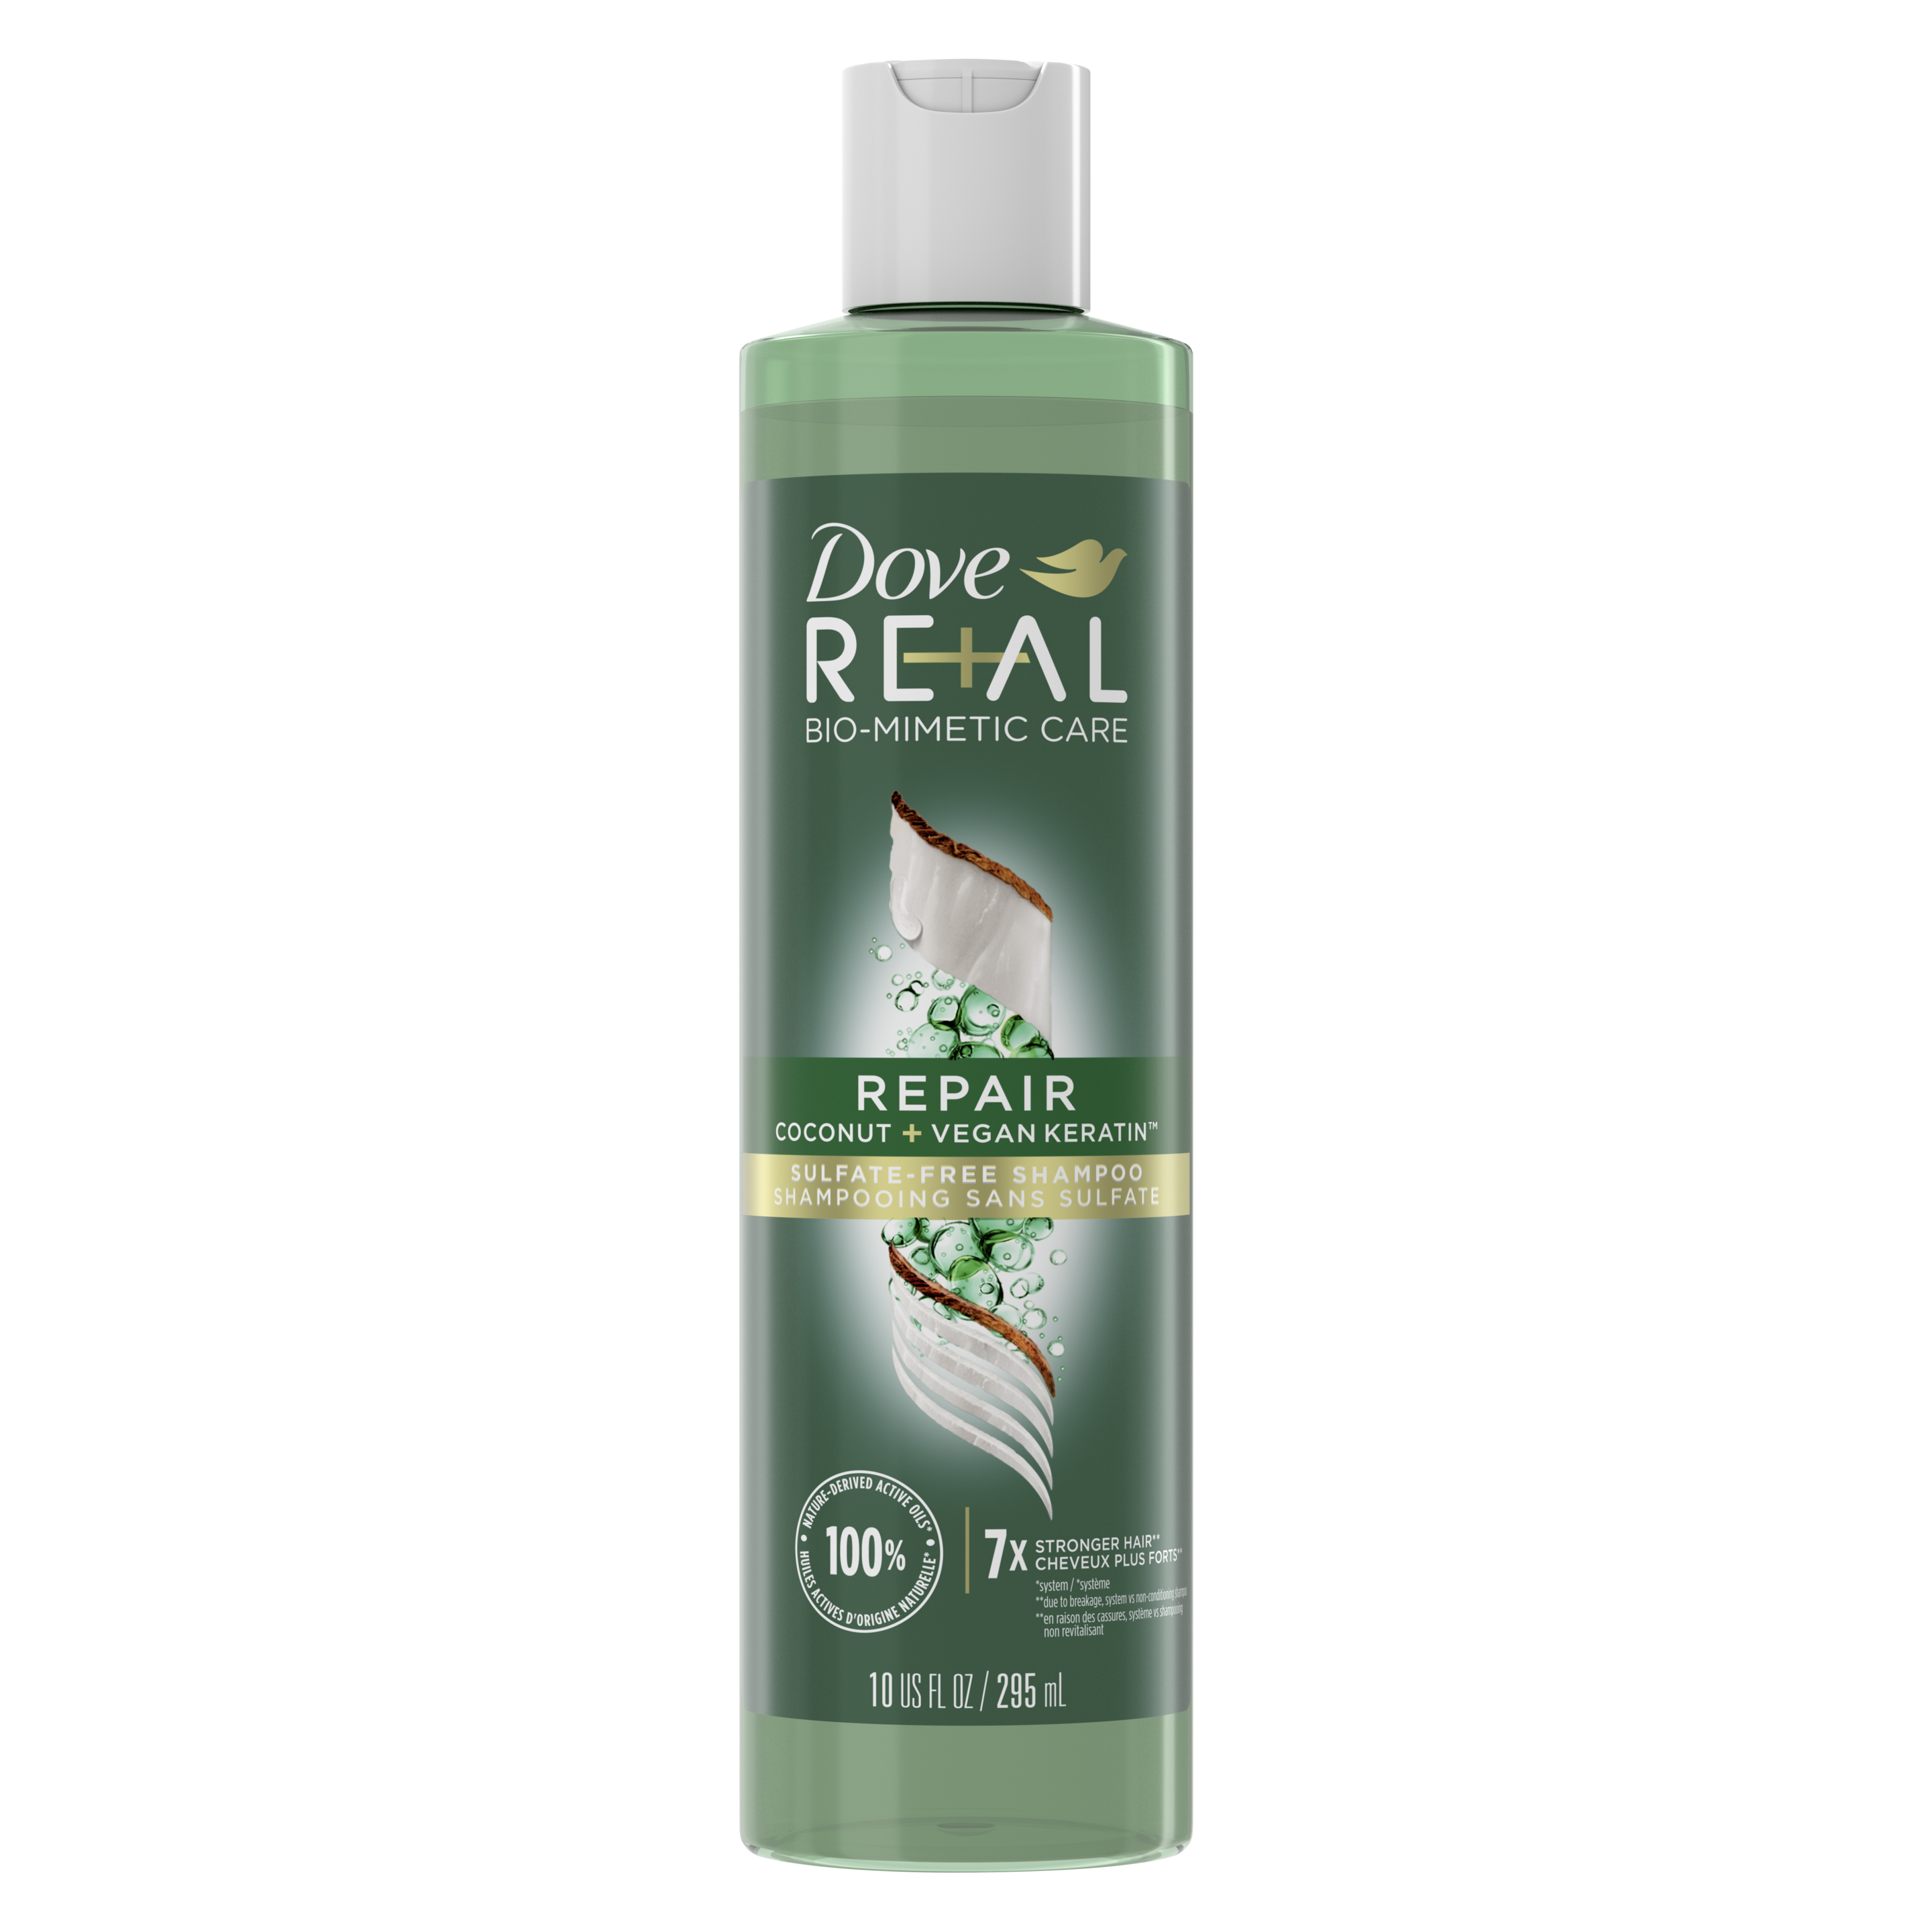 Dove RE+AL Bio-Mimetic Repair Coconut + Vegan Keratin Sulfate-Free Shampoo